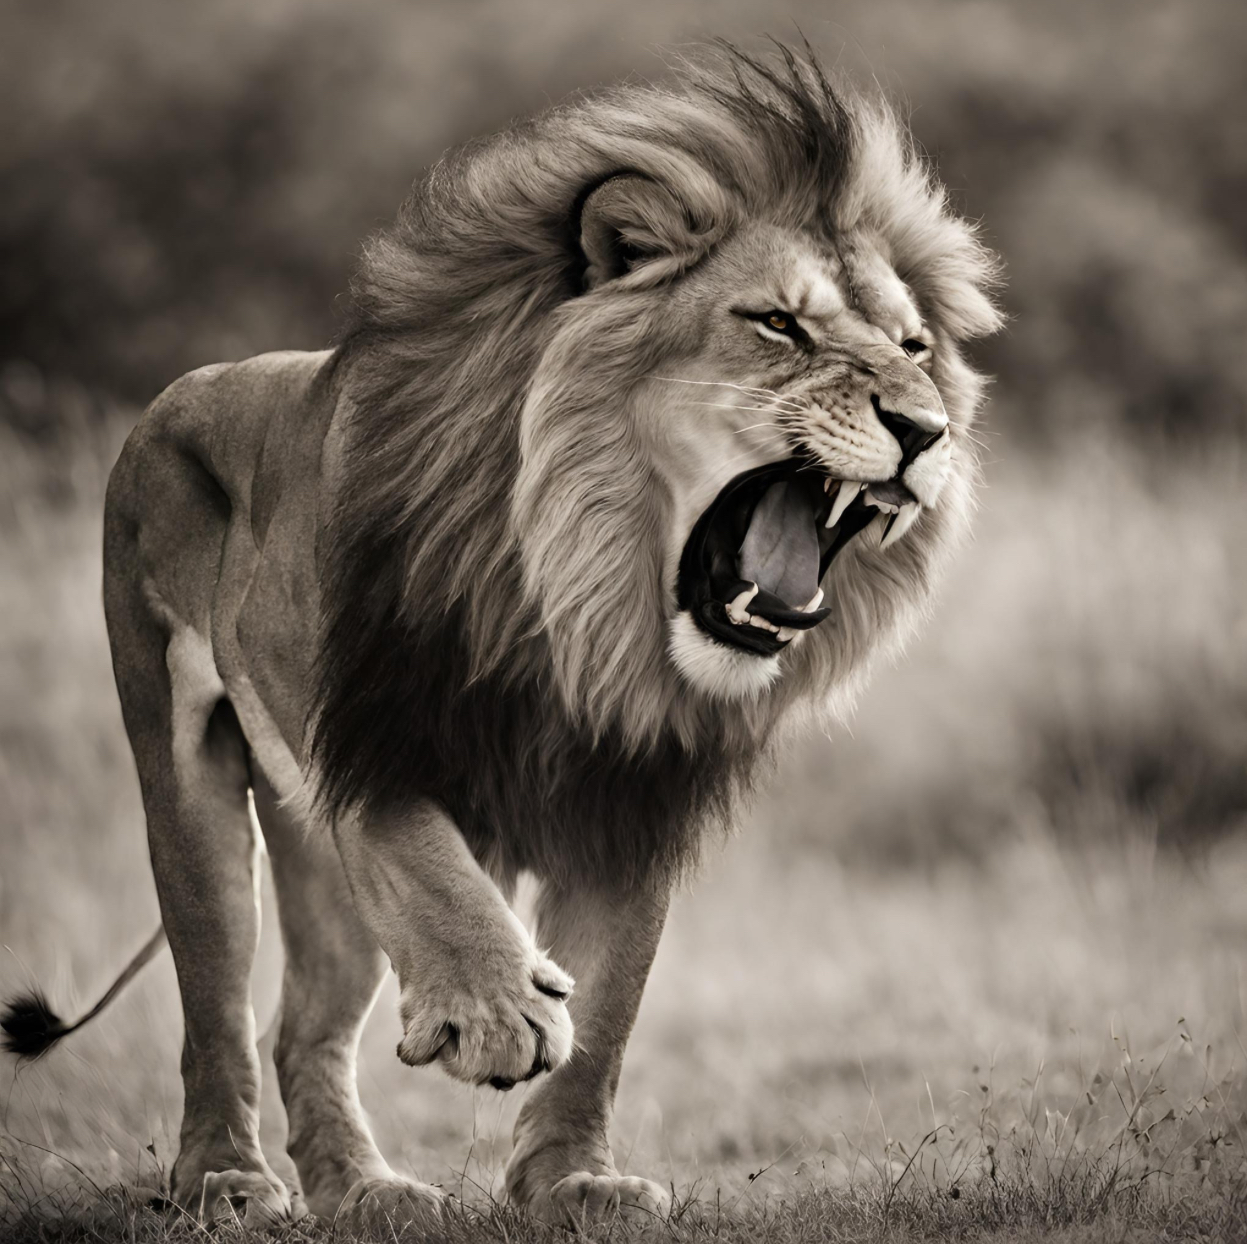 Parshas Noach: The Last Lion